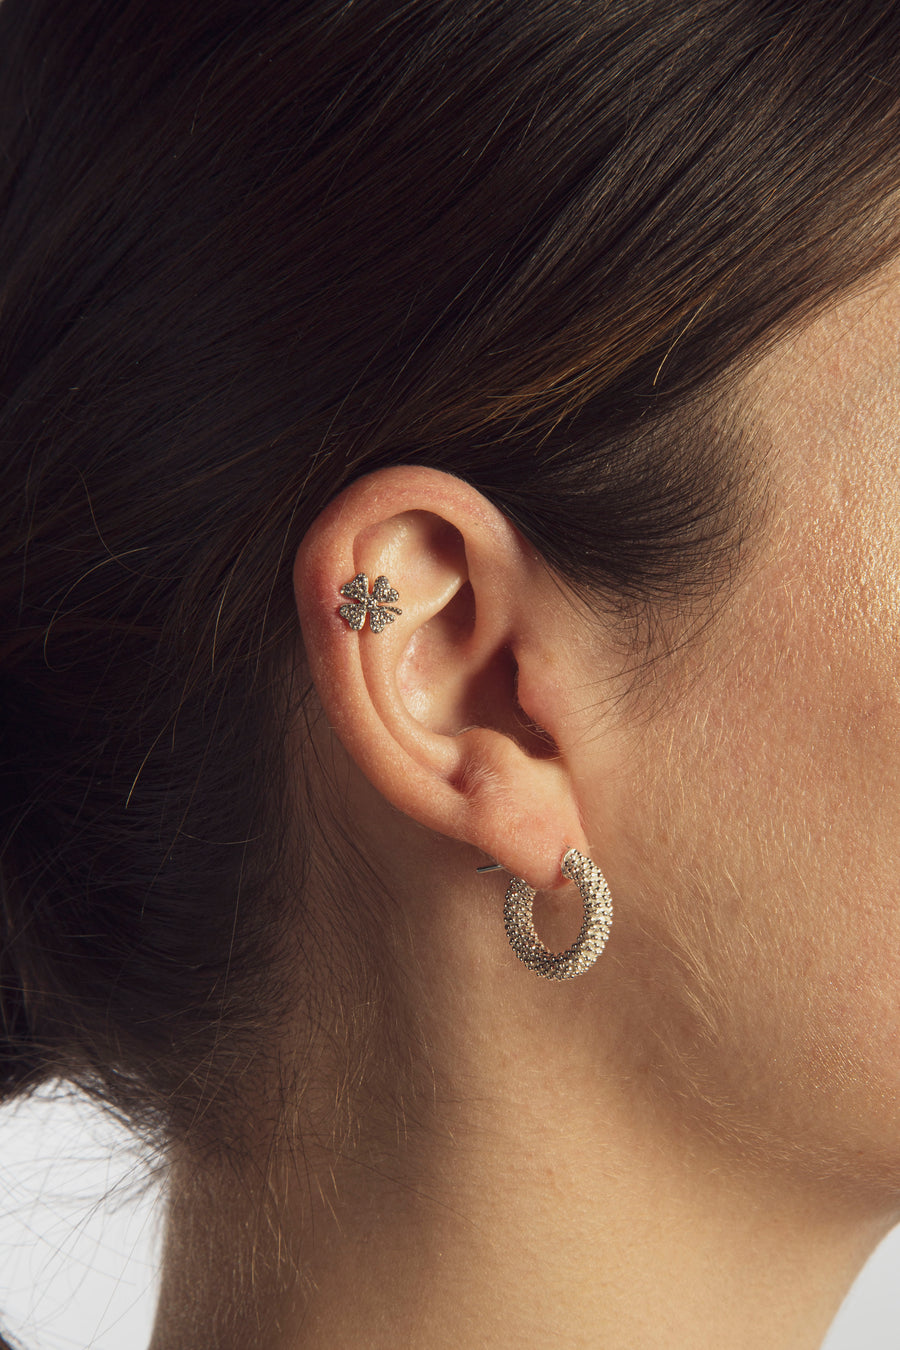 Four-leaf clover earring